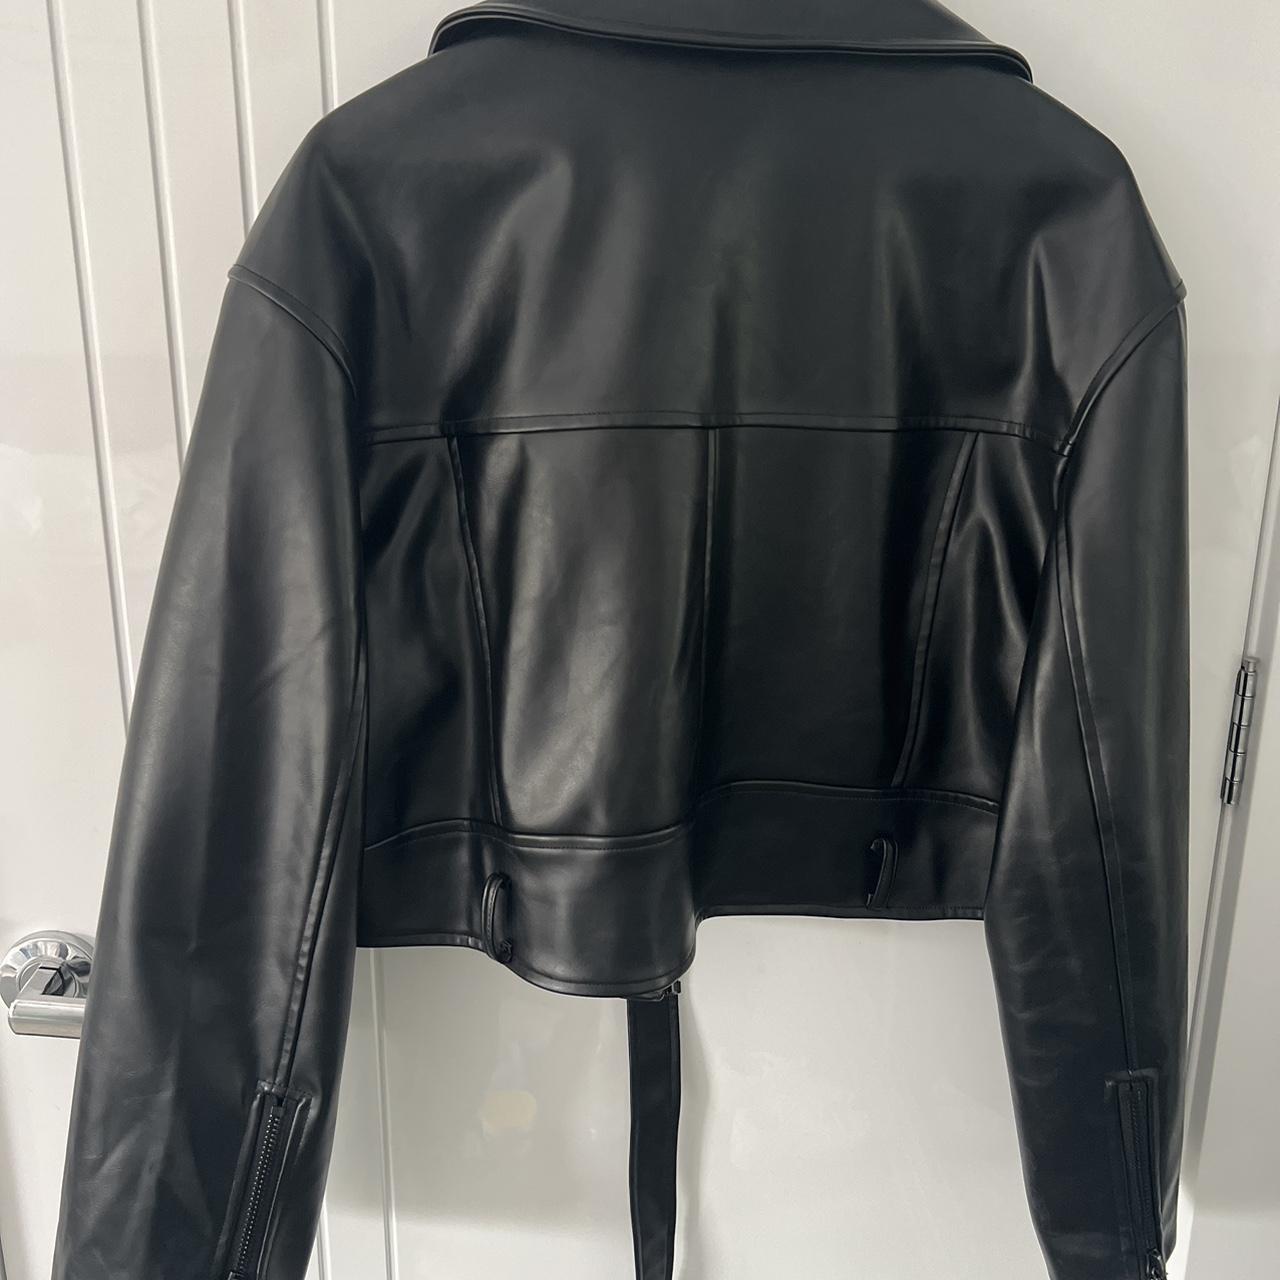 Lioness biker girl leather jacket Oversized... - Depop